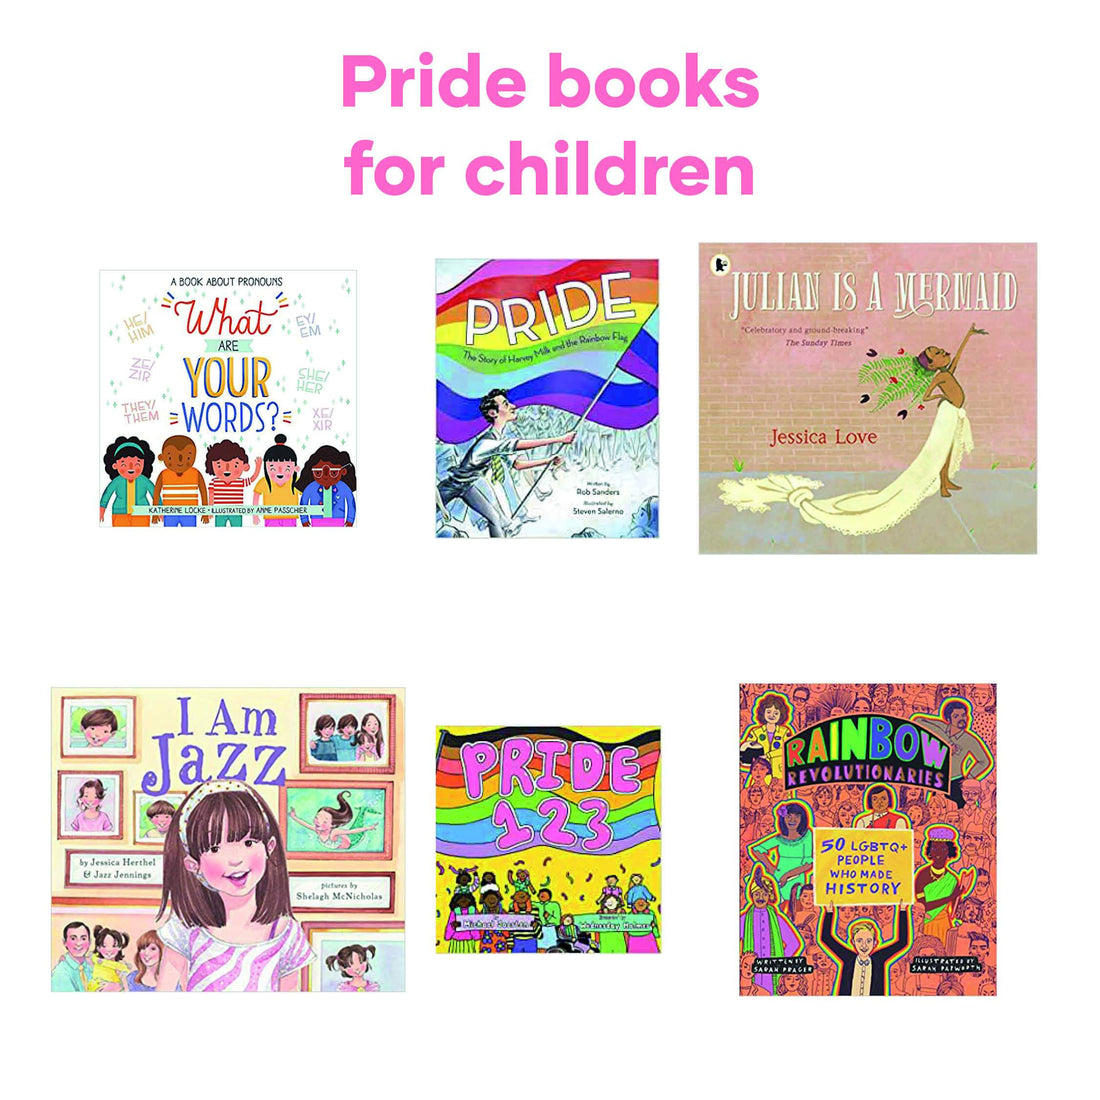 Pride books for children